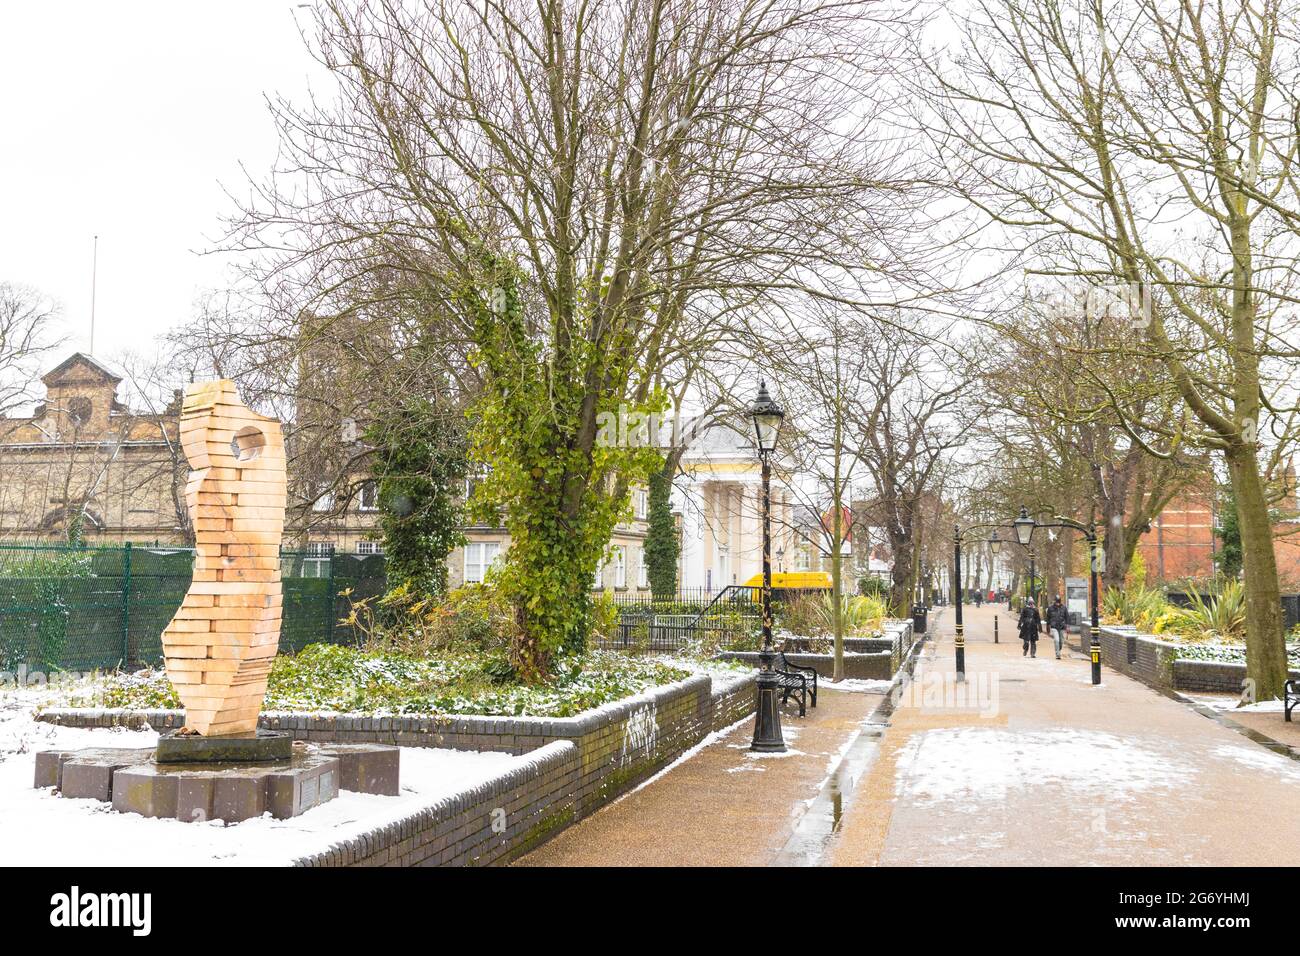 La sculpture de Clothier de John Atkin à gauche, arbres et haies. Nouveau musée de la marche en arrière-plan. Neige couverte Nouvelle promenade au-dessus de Waterloo Way. Banque D'Images